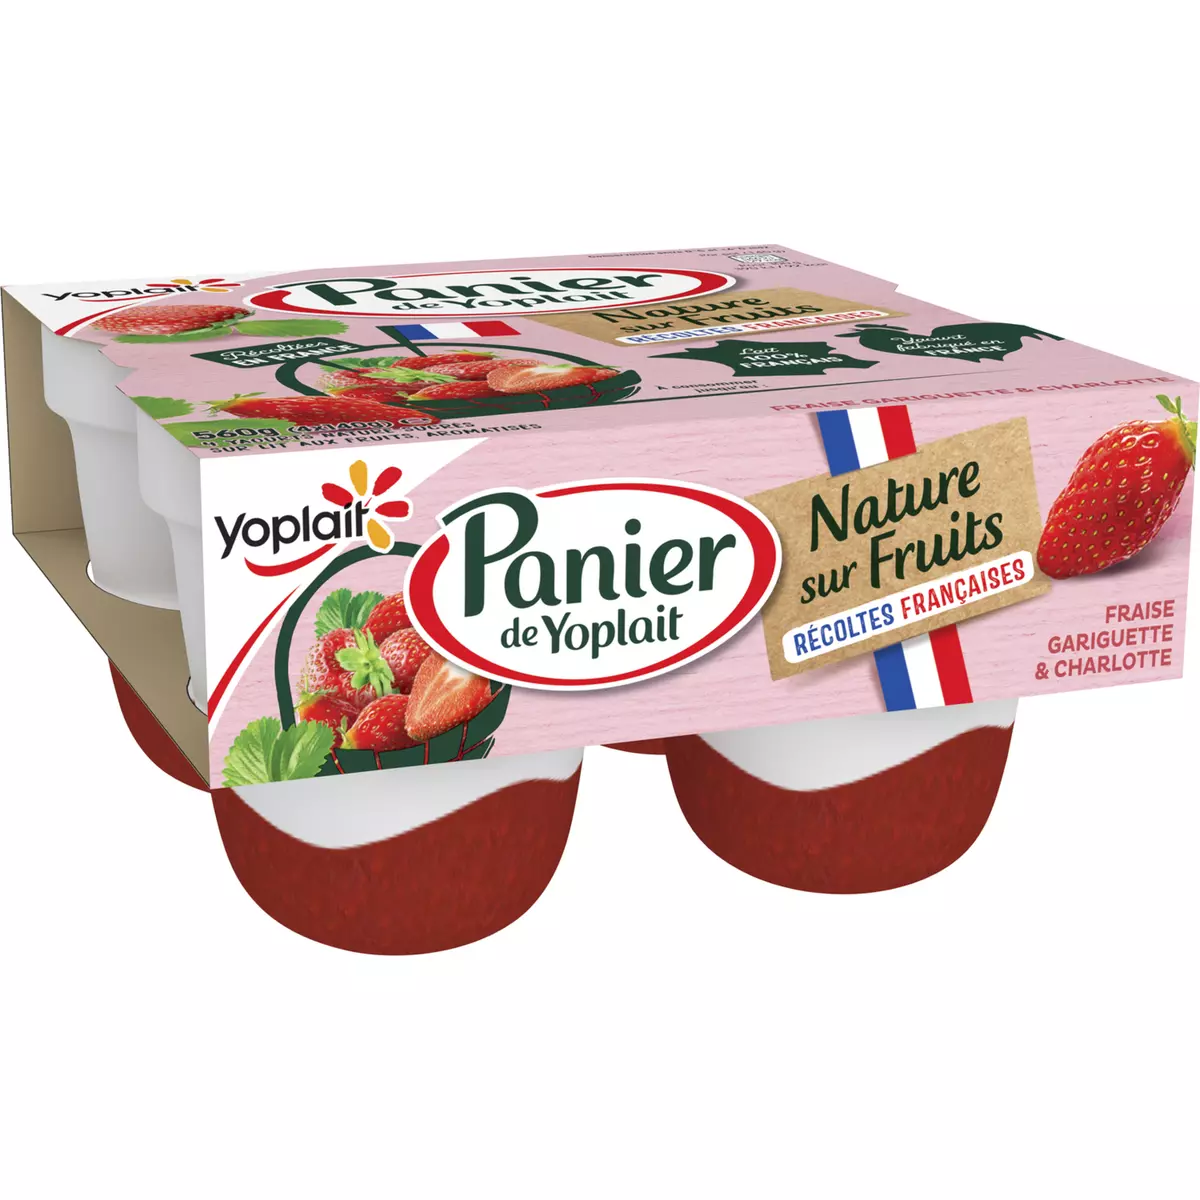 PANIER DE YOPLAIT Yaourt nature sur lit de fraise gariguette et charlotte 4x140g